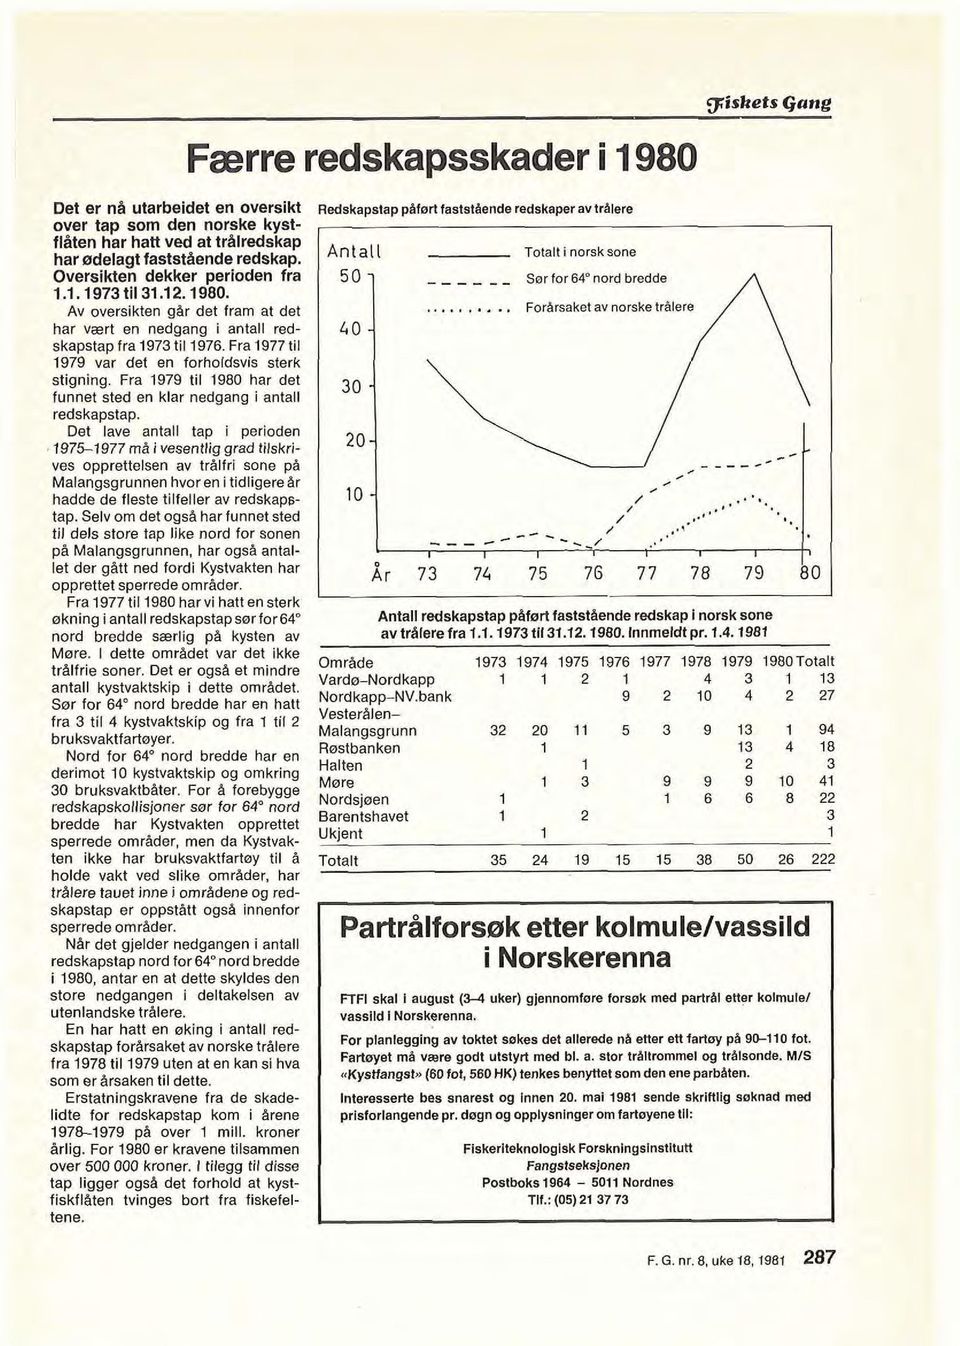 Fra 1979 til 1980 har det funnet sted en klar nedgang i antall redskapstap.